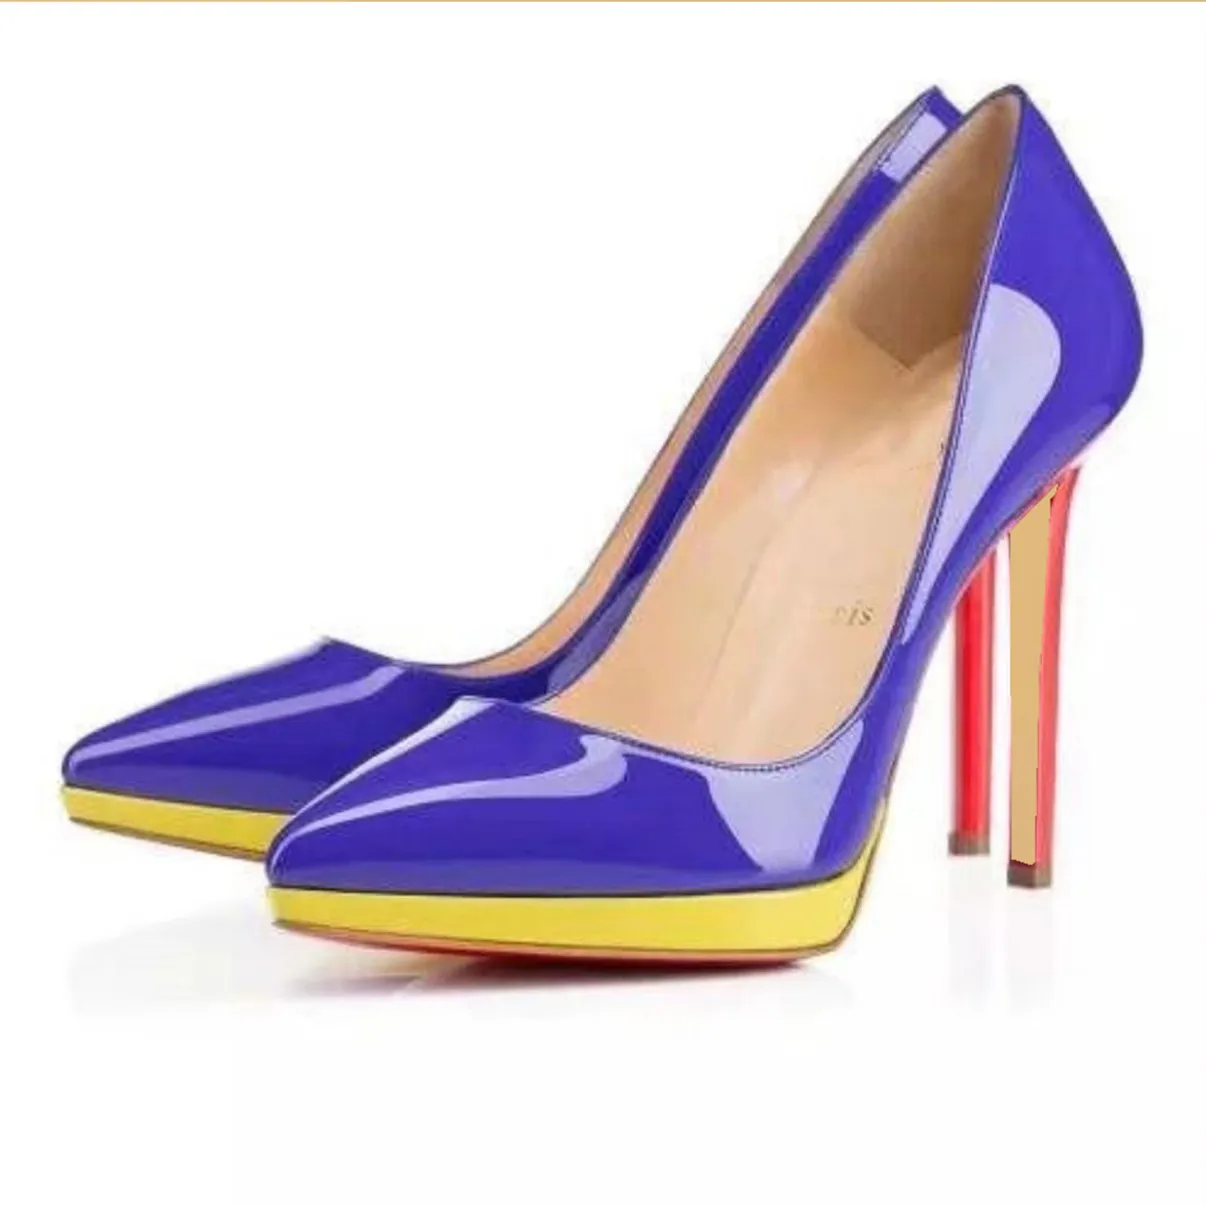 7A Высококачественные женские ботинки для ботинок.